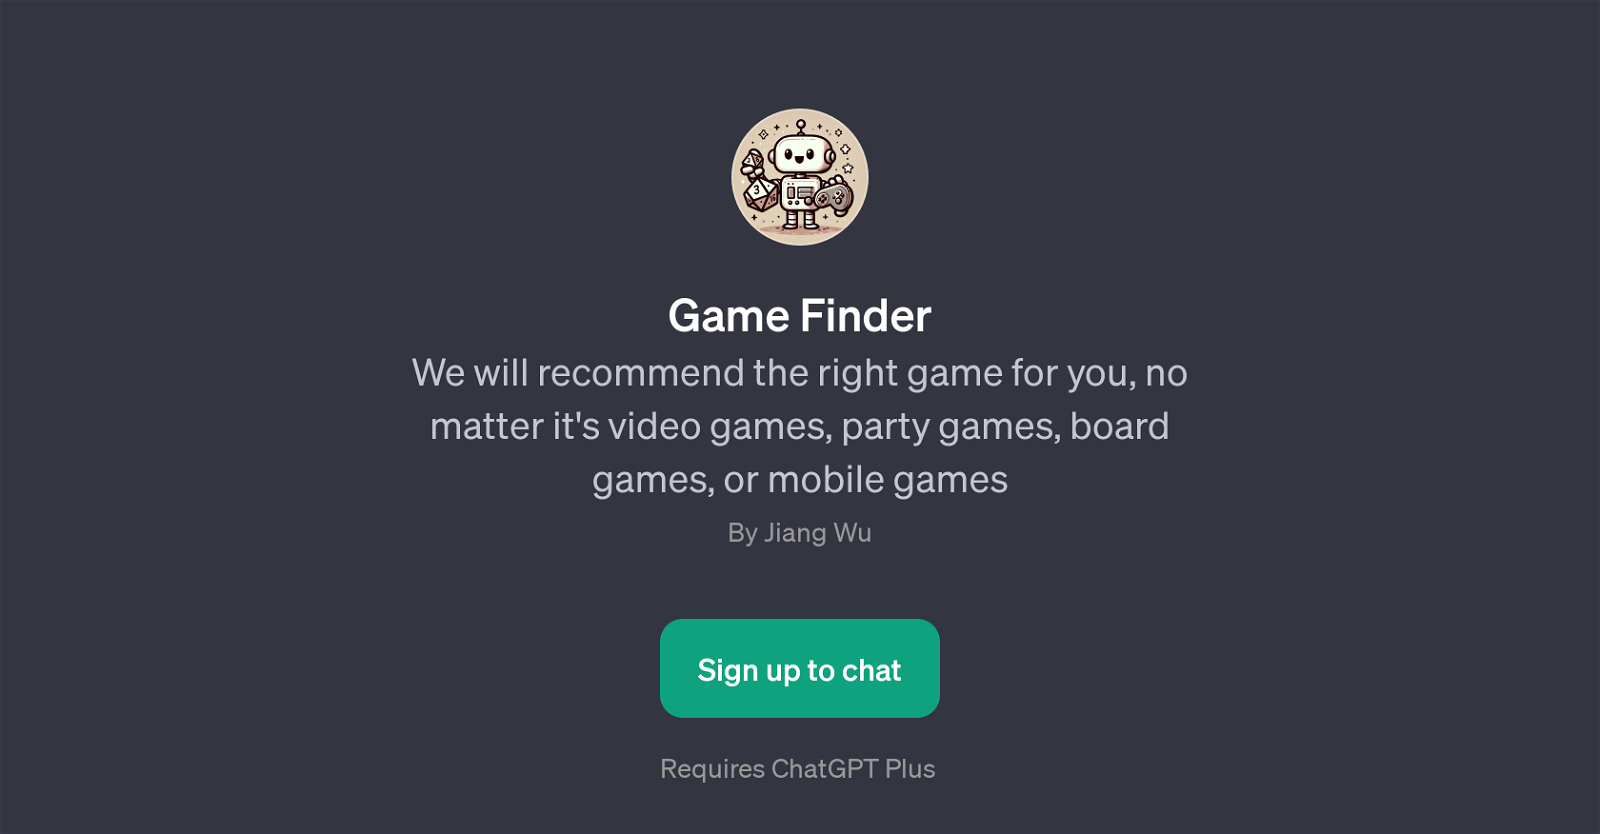 Game Finder website